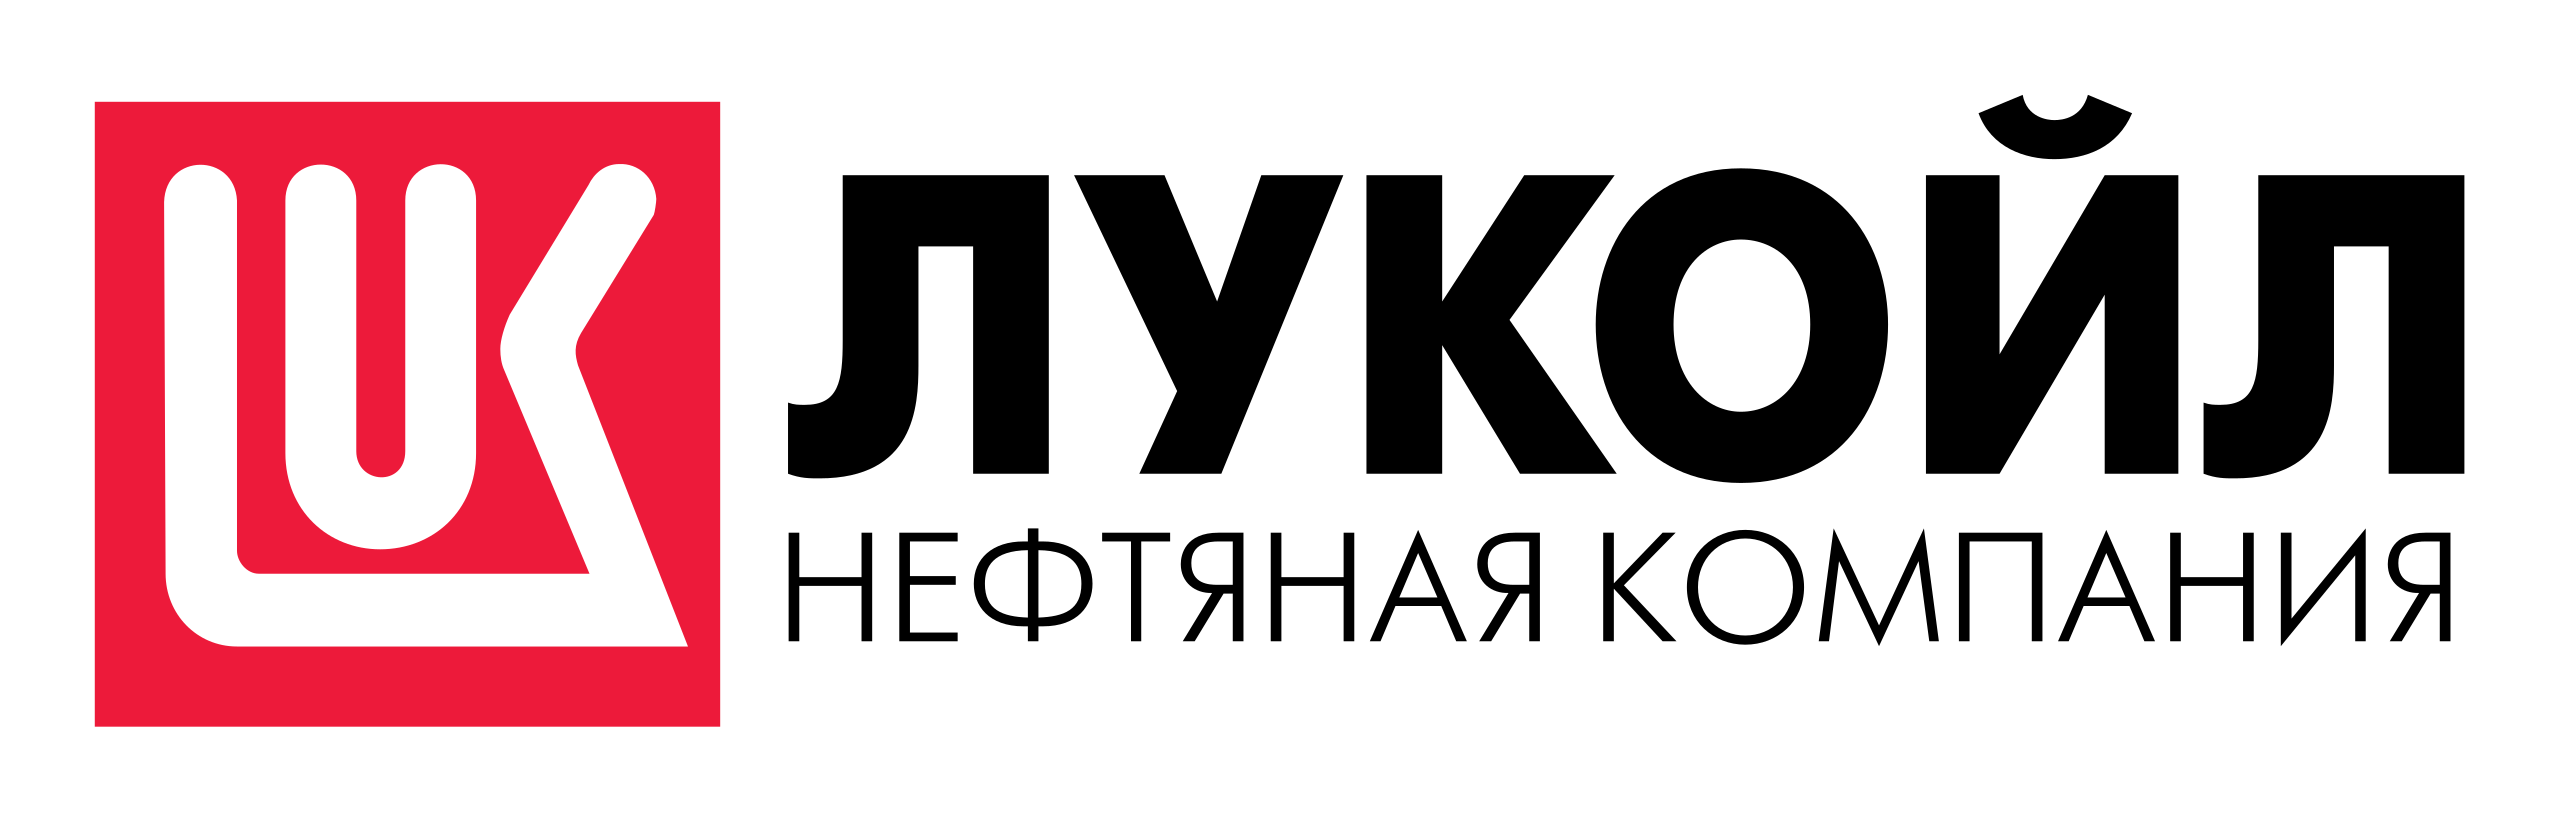 2560px-LUK_OIL_Logo_kyr.svg